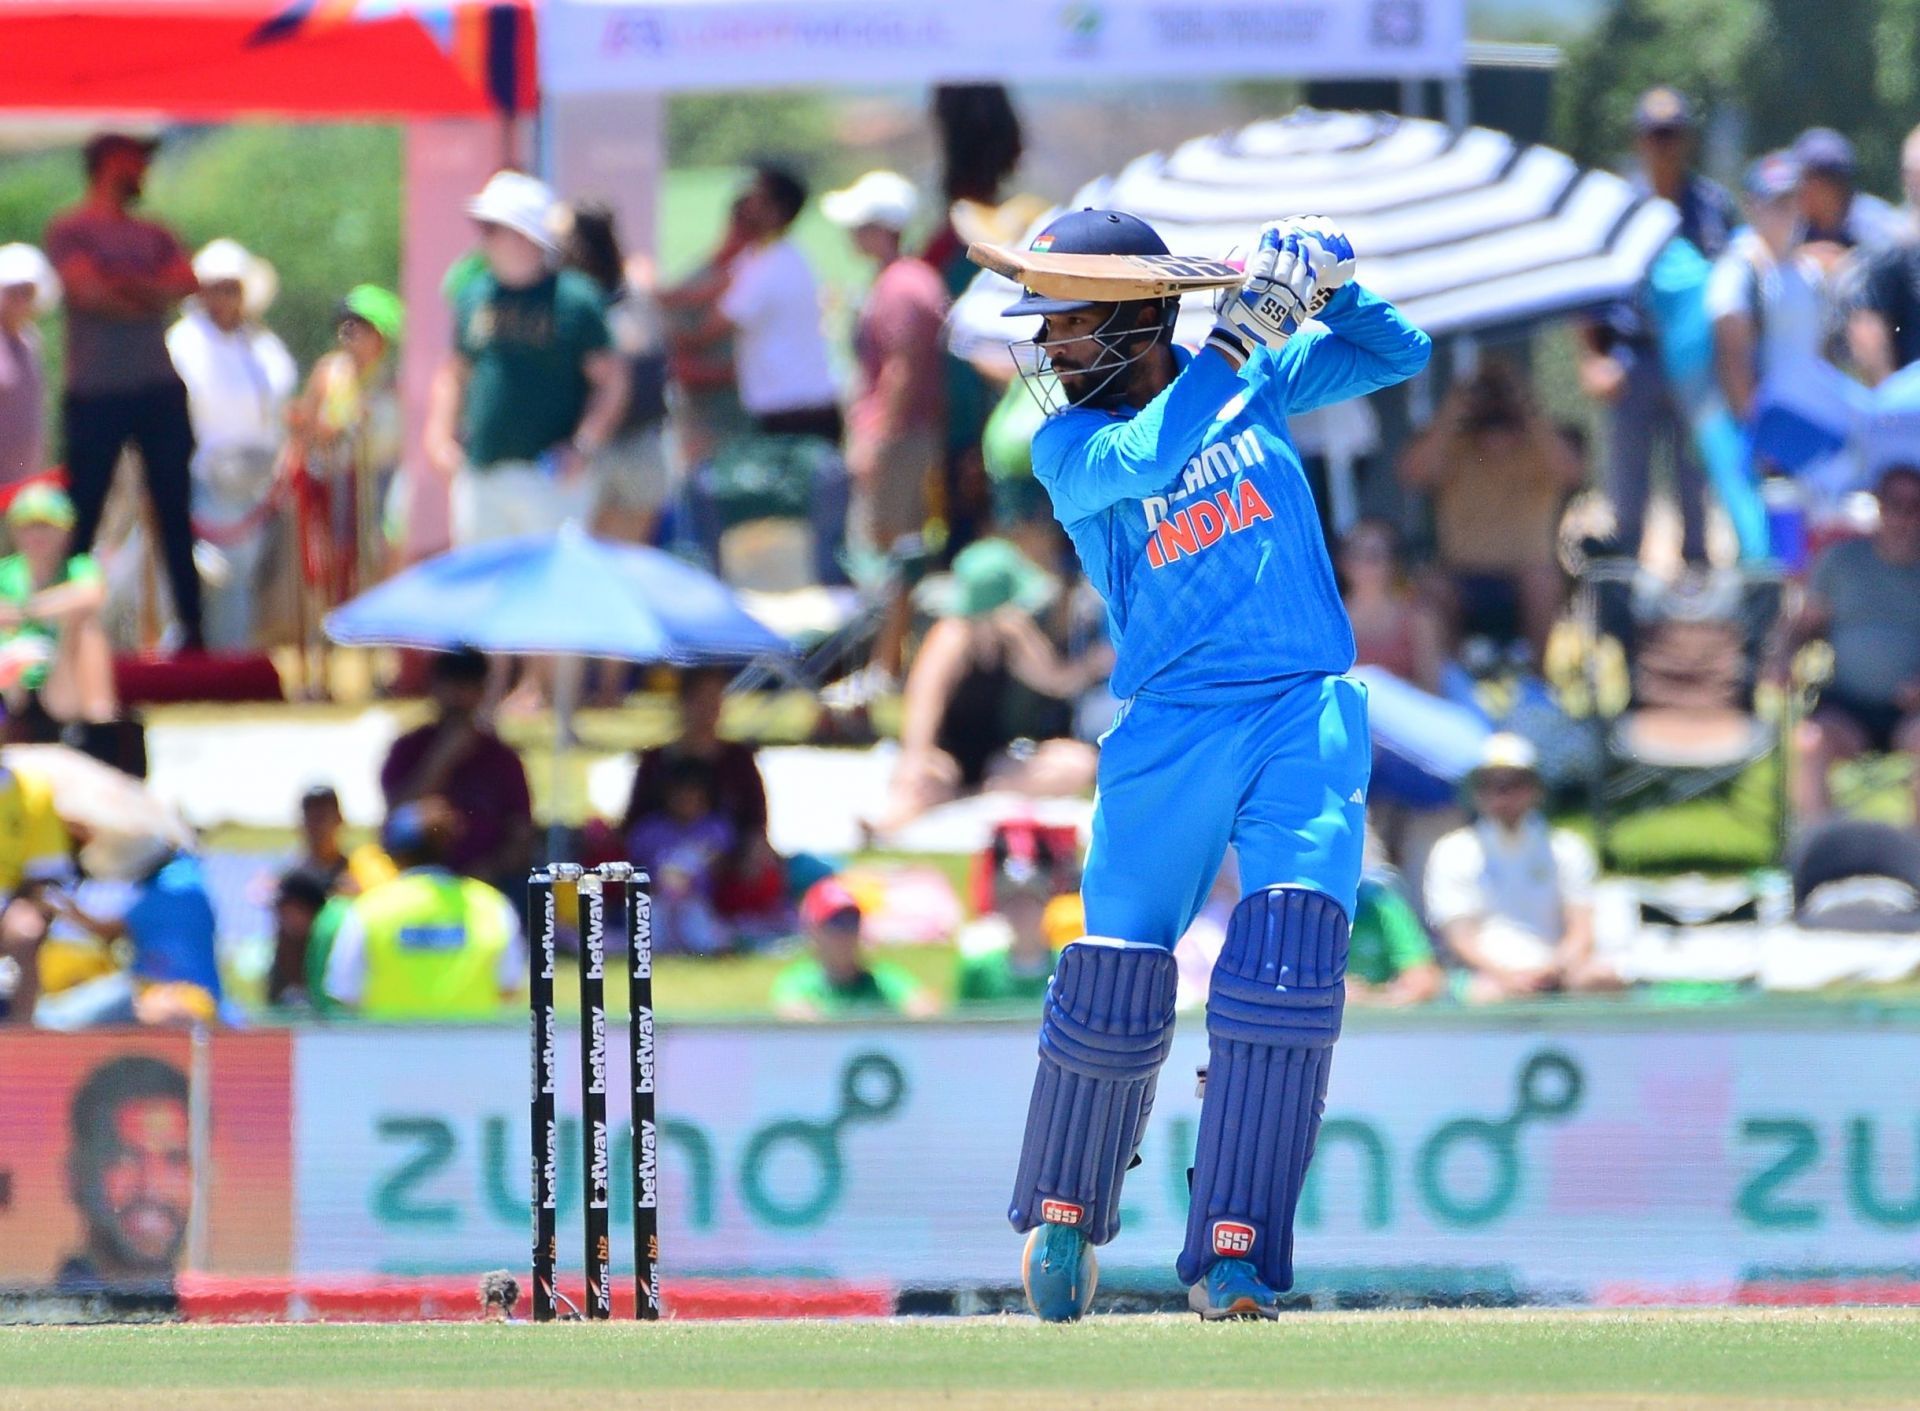 Patidar was impressive on his ODI debut